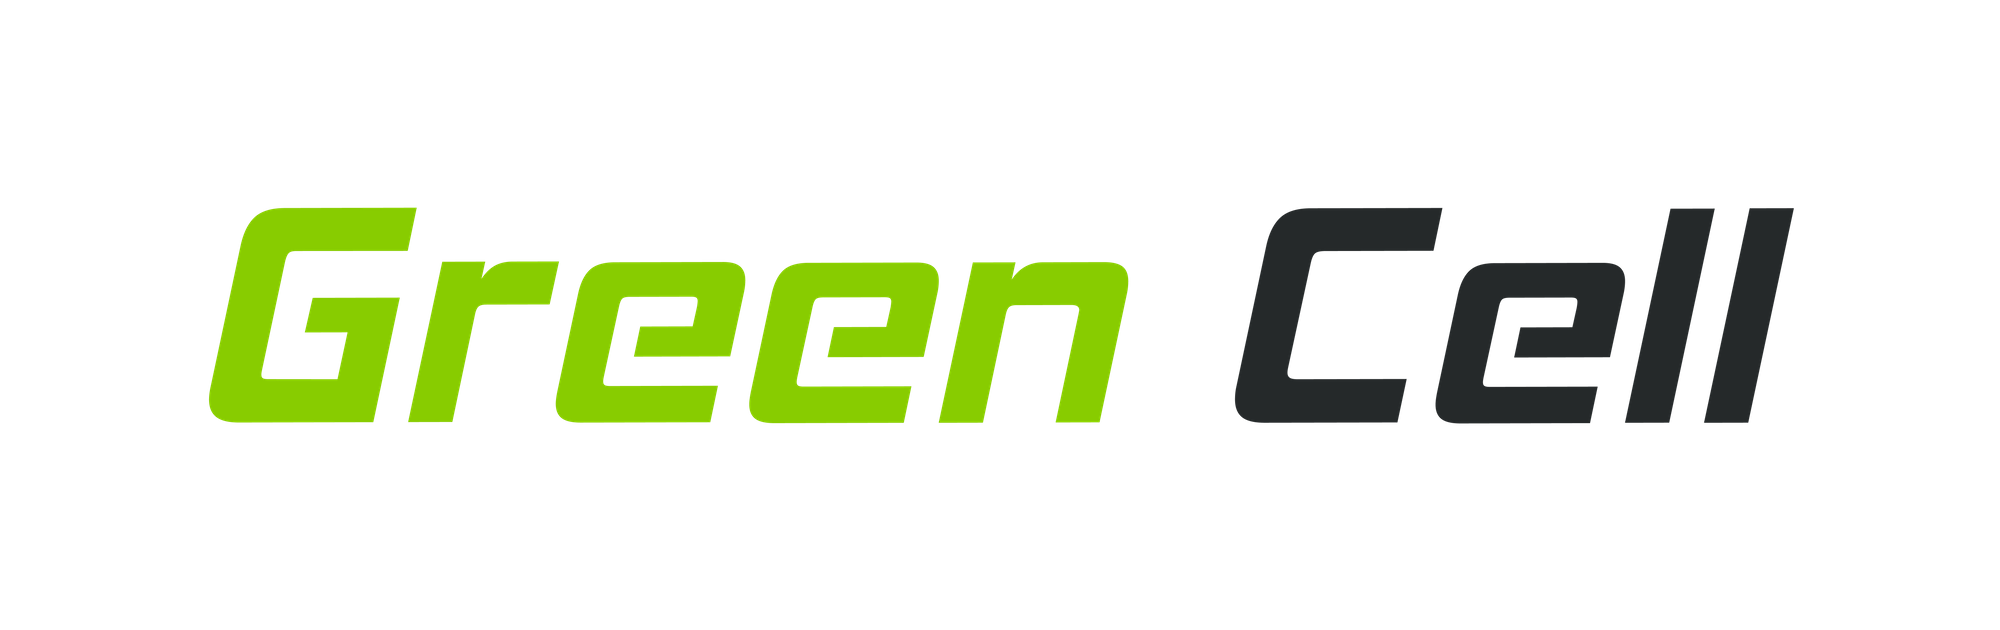 green cell logo